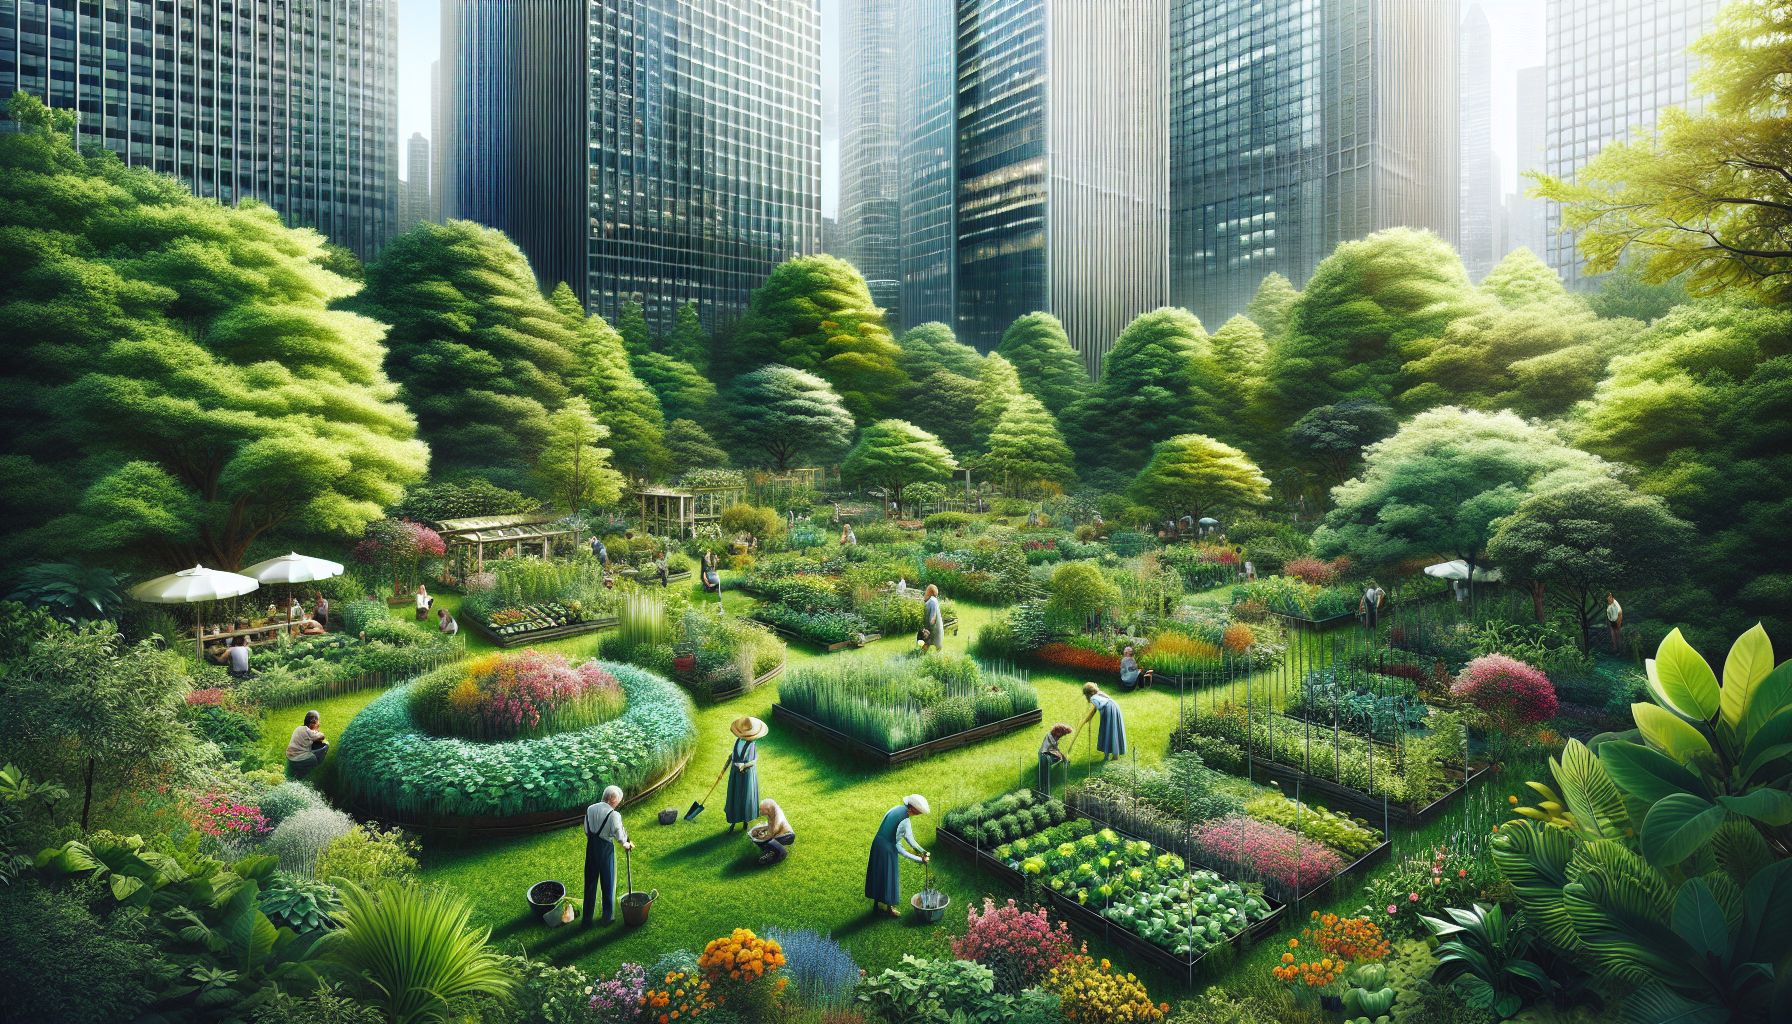 Roheline oaas linnasüdames: Aiandus kui hingele pai